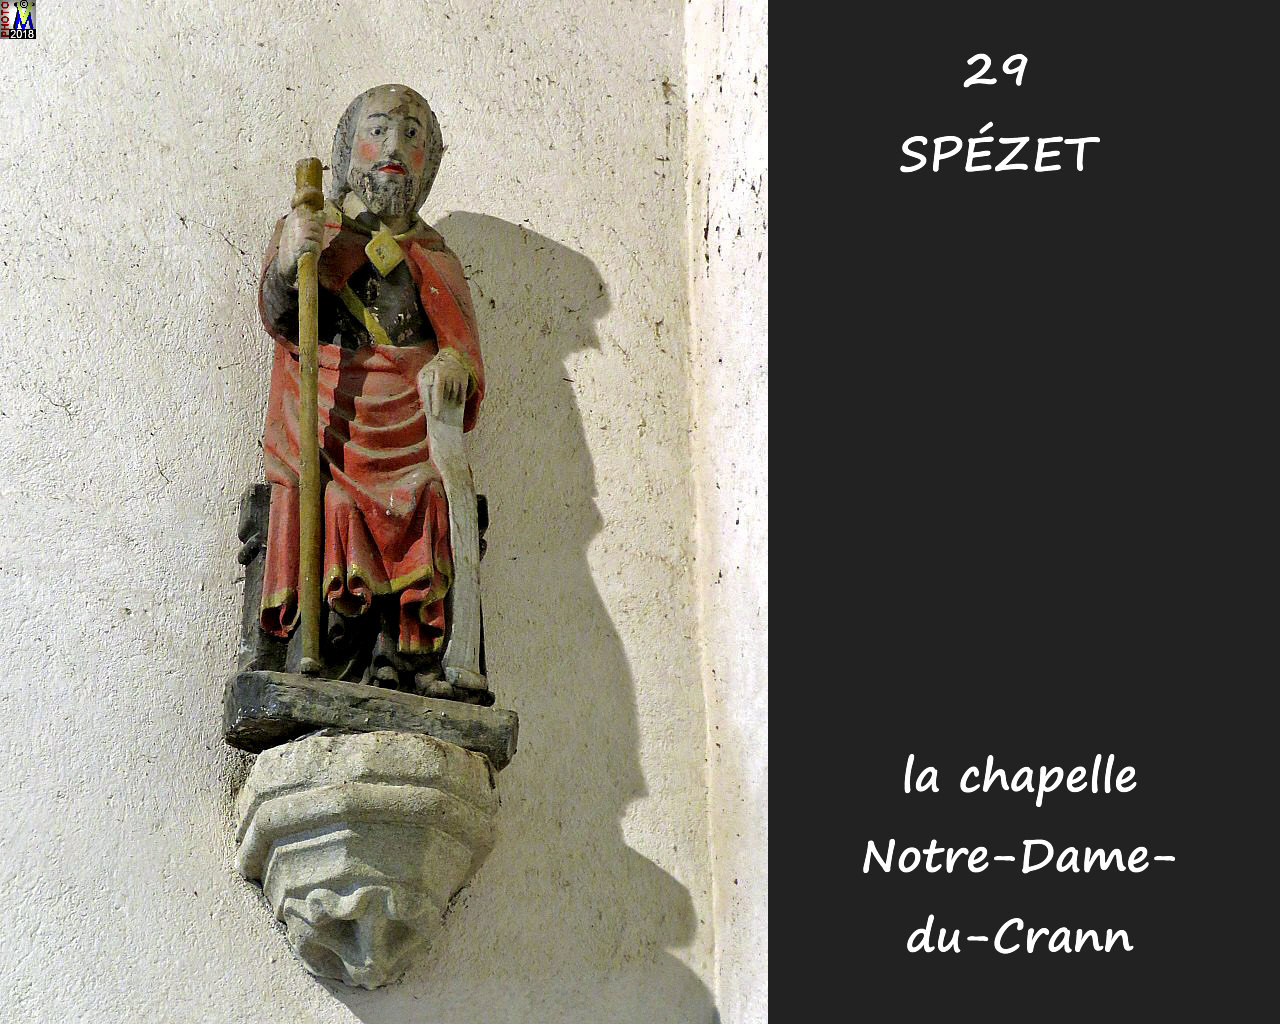 29SPEZET_chapelleNDC_262.jpg